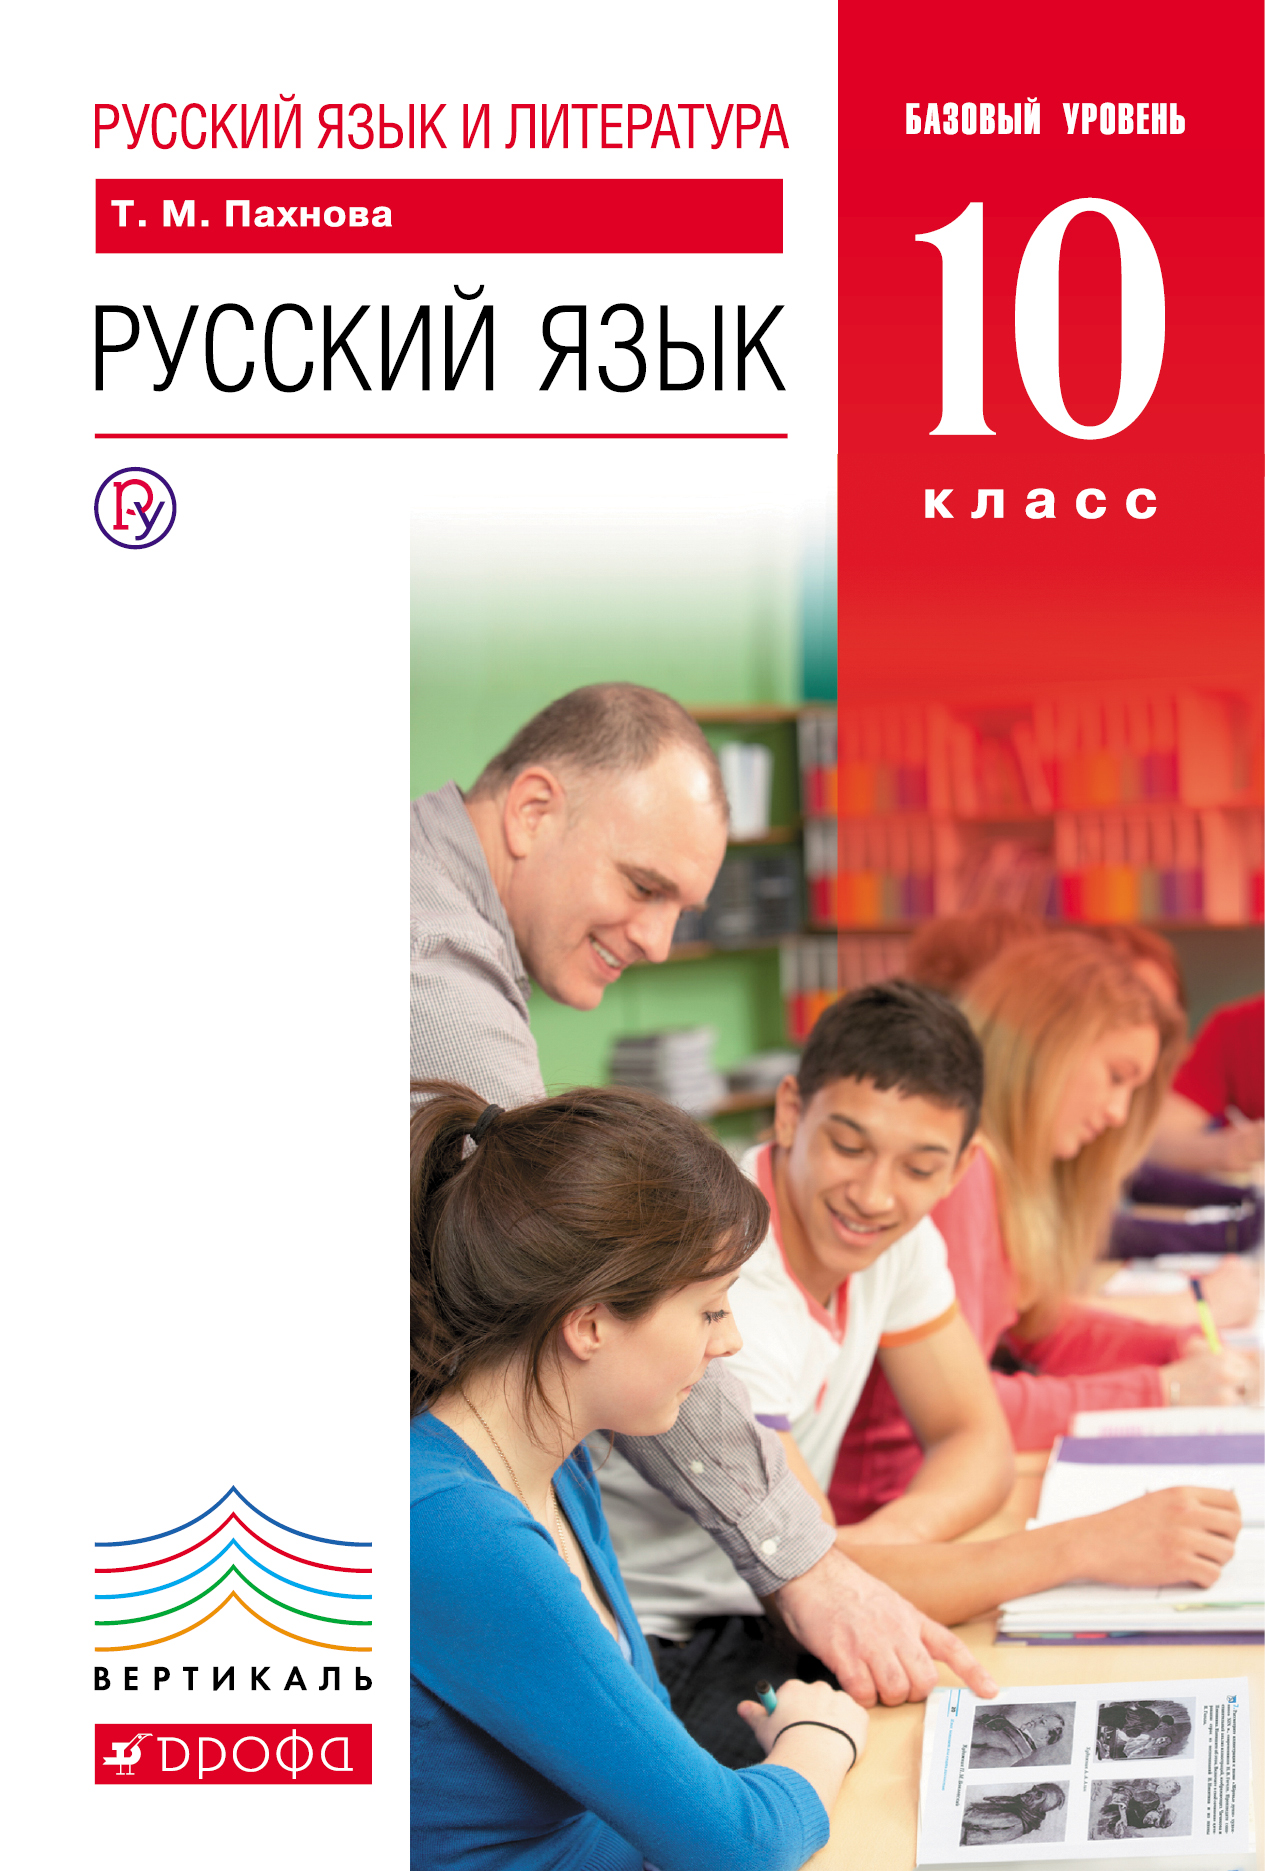 Русский язык и литература. Русский язык. 10 класс. Базовый уровень